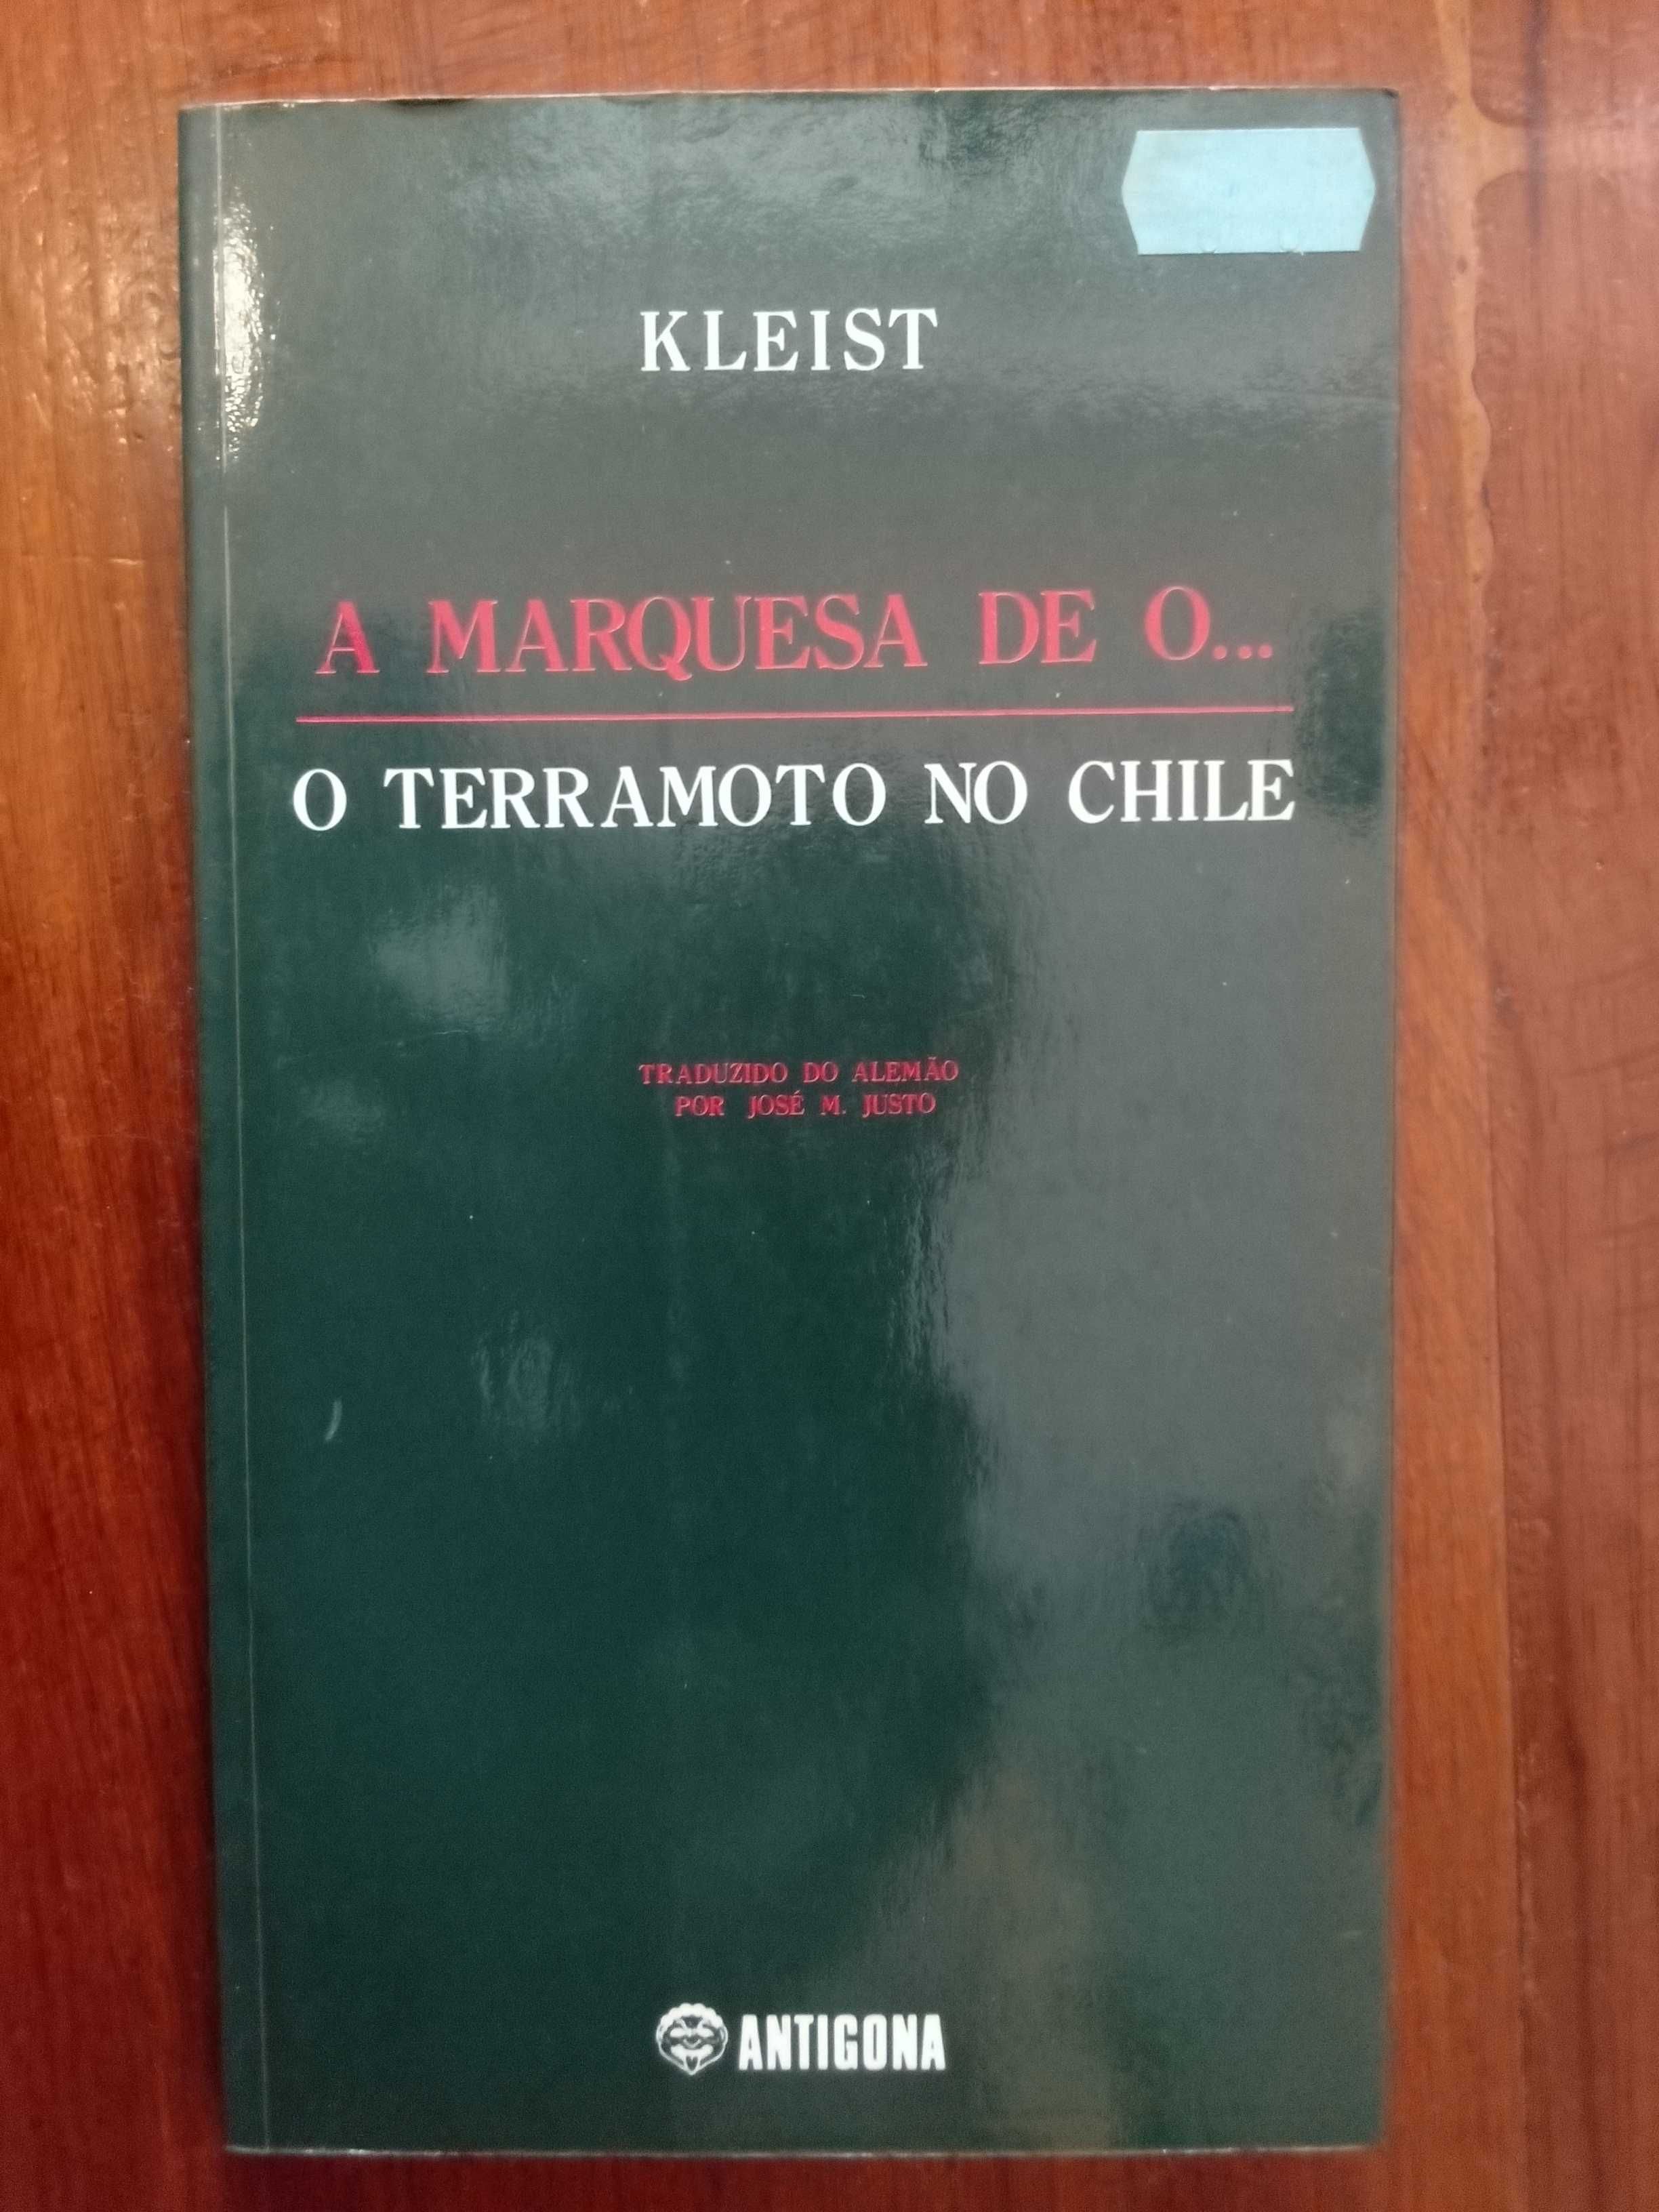 Kleist - A Marquesa de O...O Terramoto no Chile